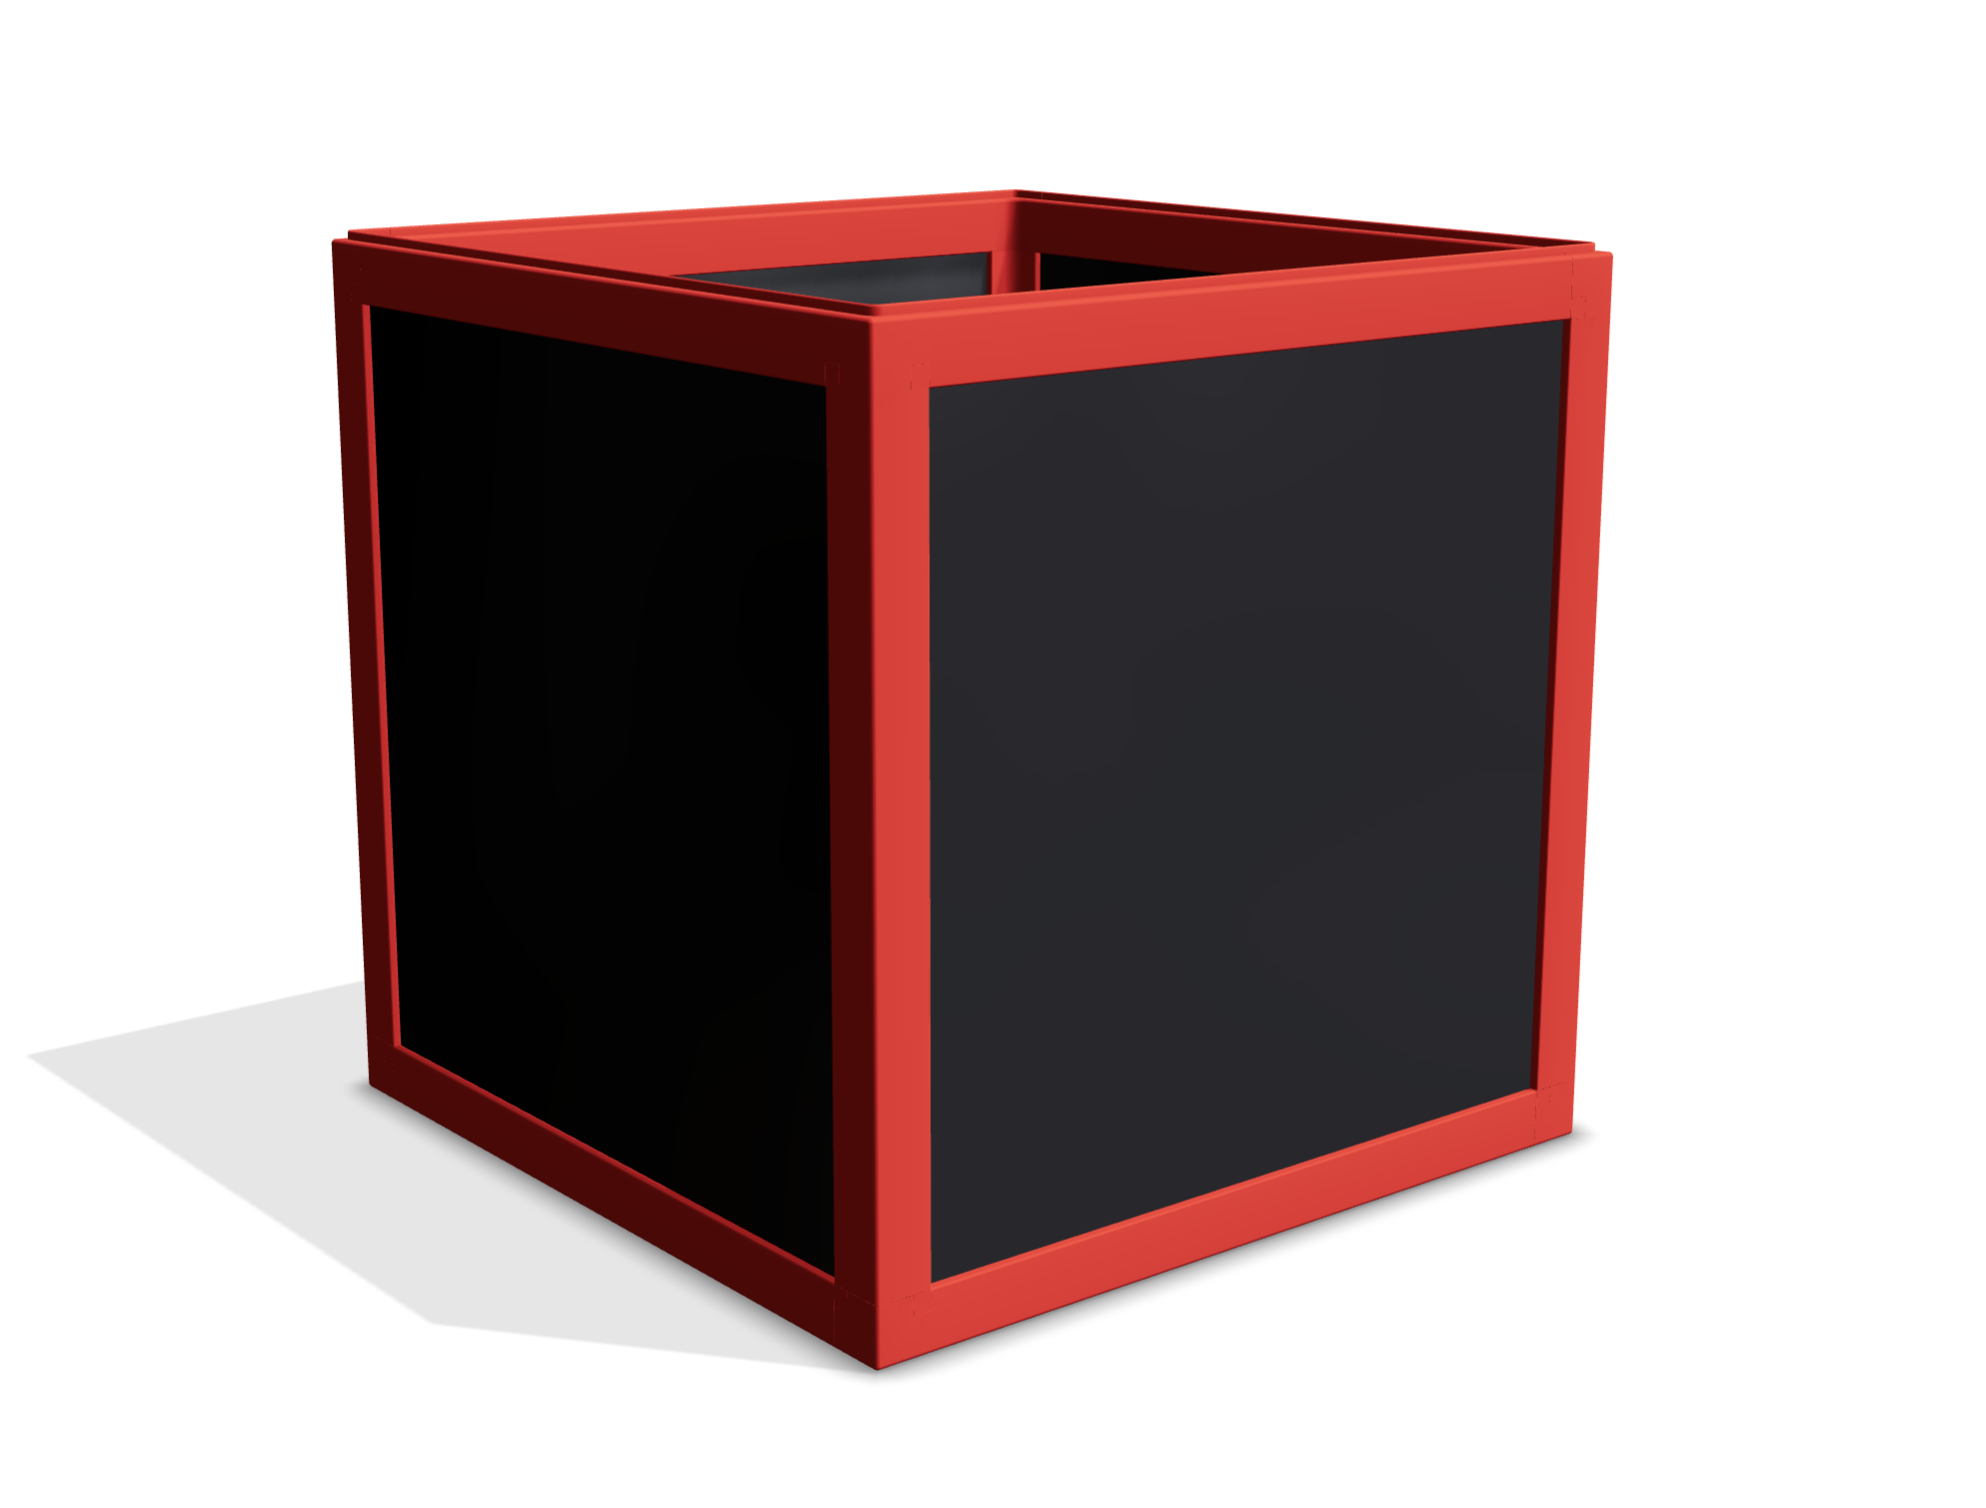 Würfelförmige boxula ohne Deckel mit Rahmenfarbe Maximum Red und Seitenwänden in Rich Black glossy